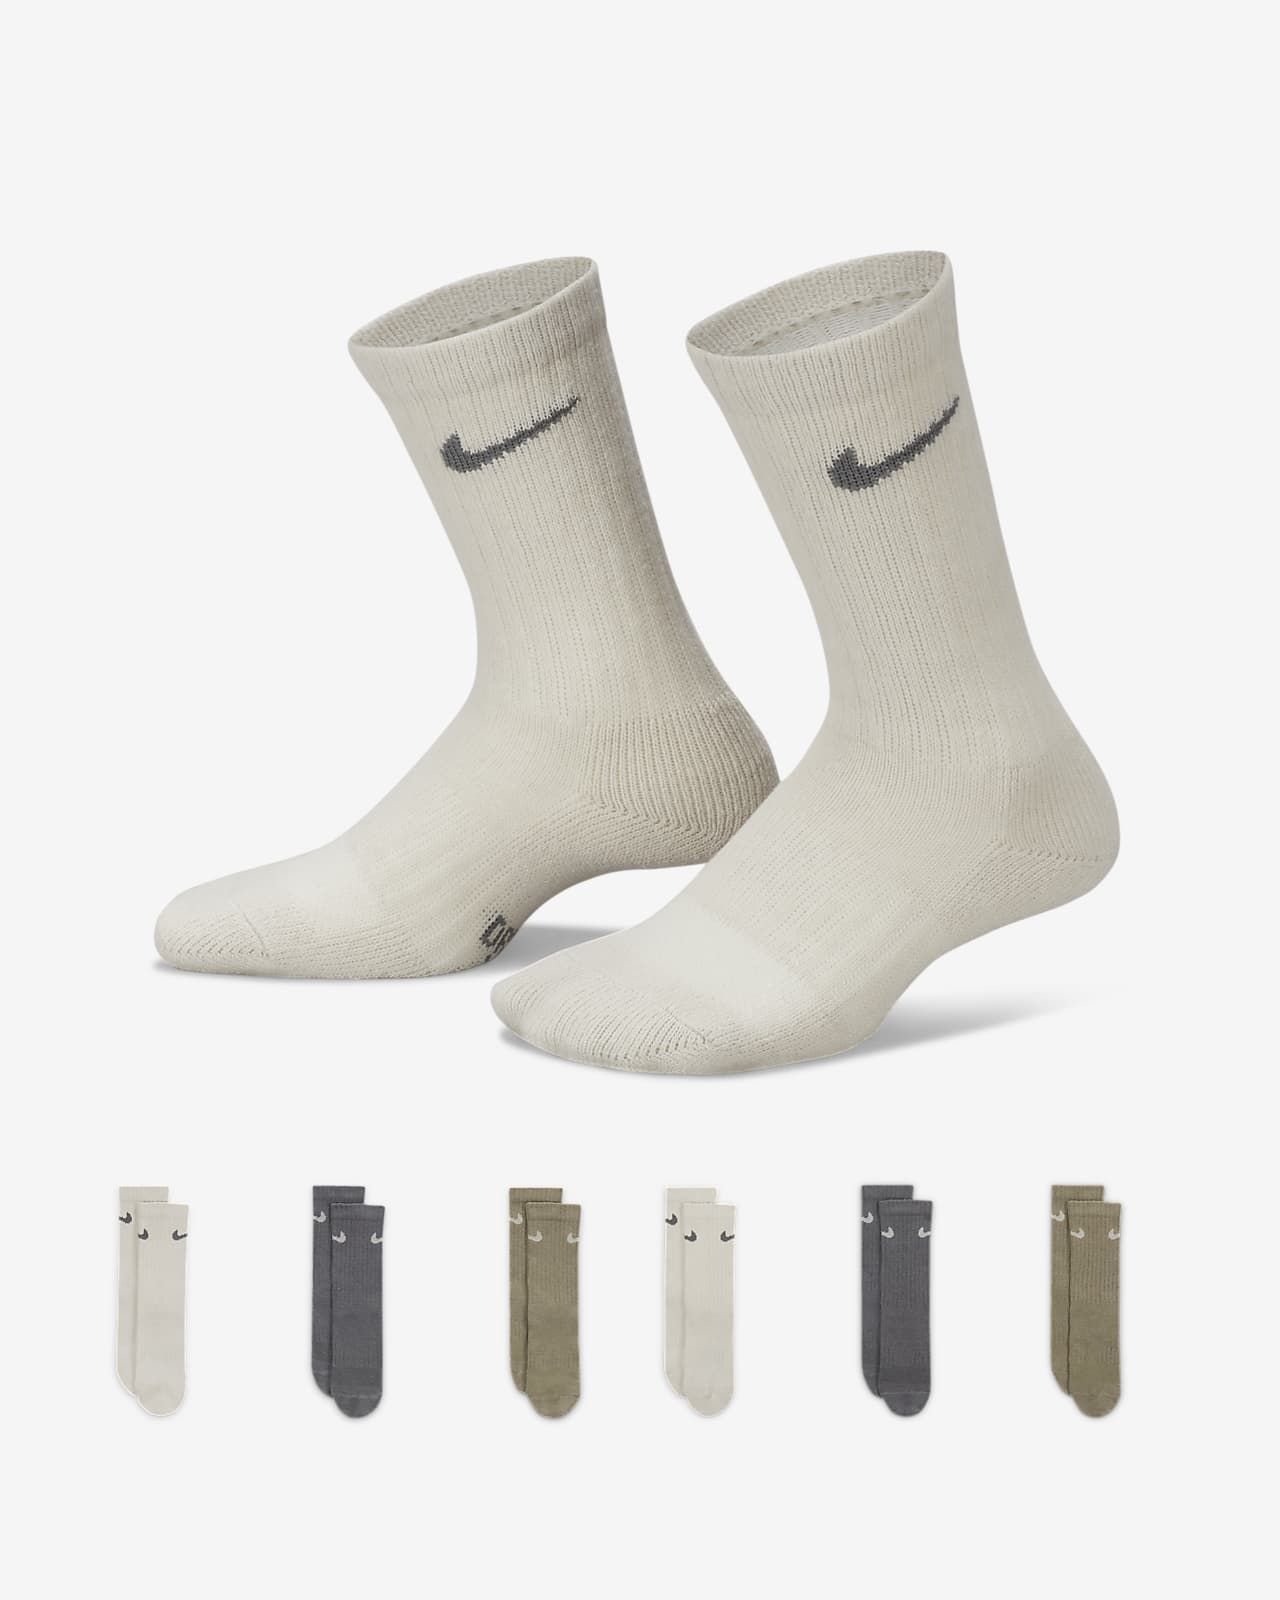 Little Kids' Crew Socks (6 Pairs) | Nike (US)